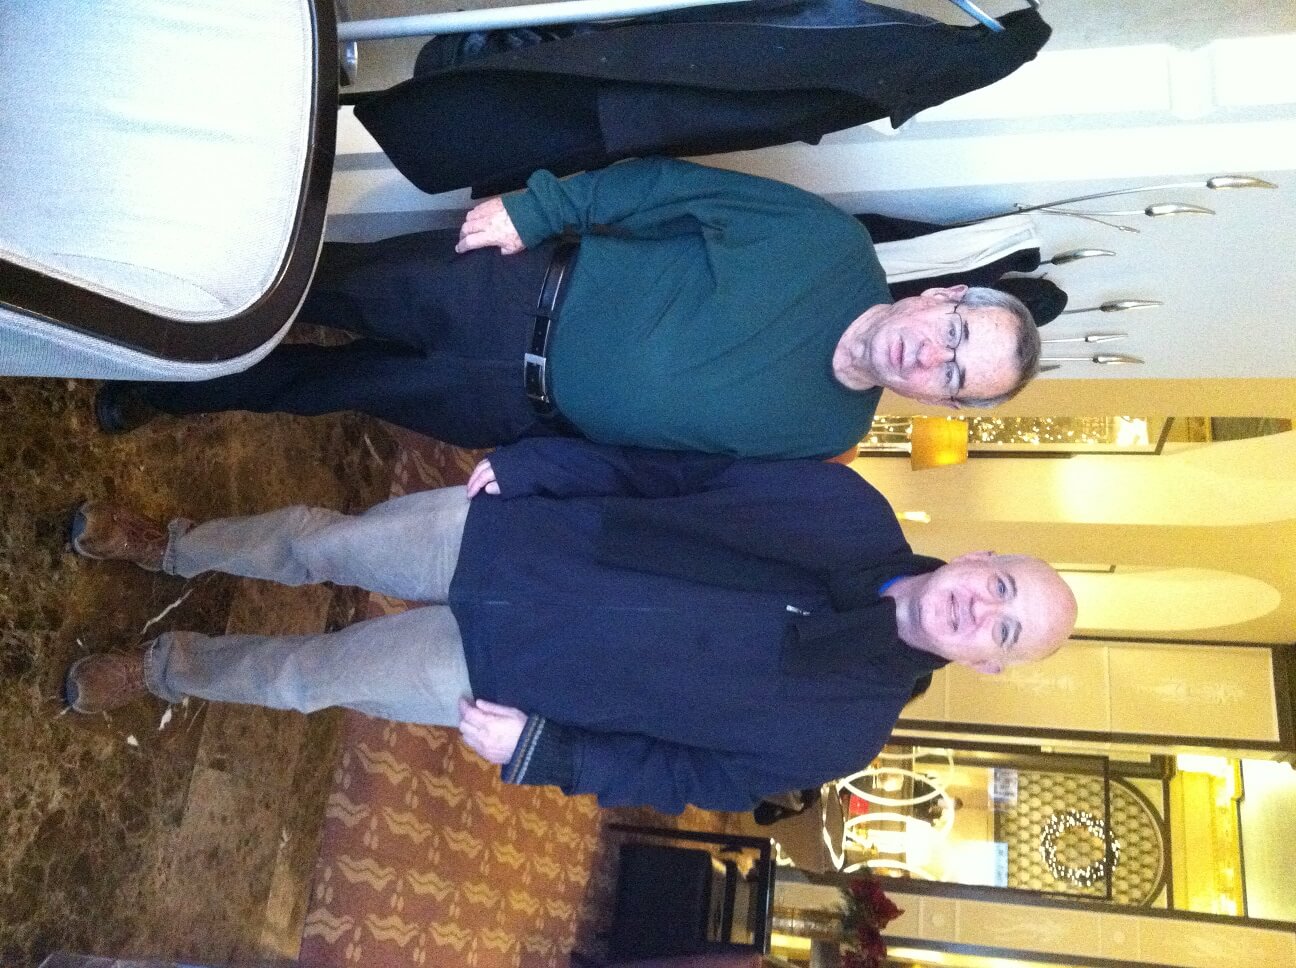 פרופ' אריה ורשל והח"מ במלון גרנד בשטוקהולם, 6.12.13. צילום: אתר הידען